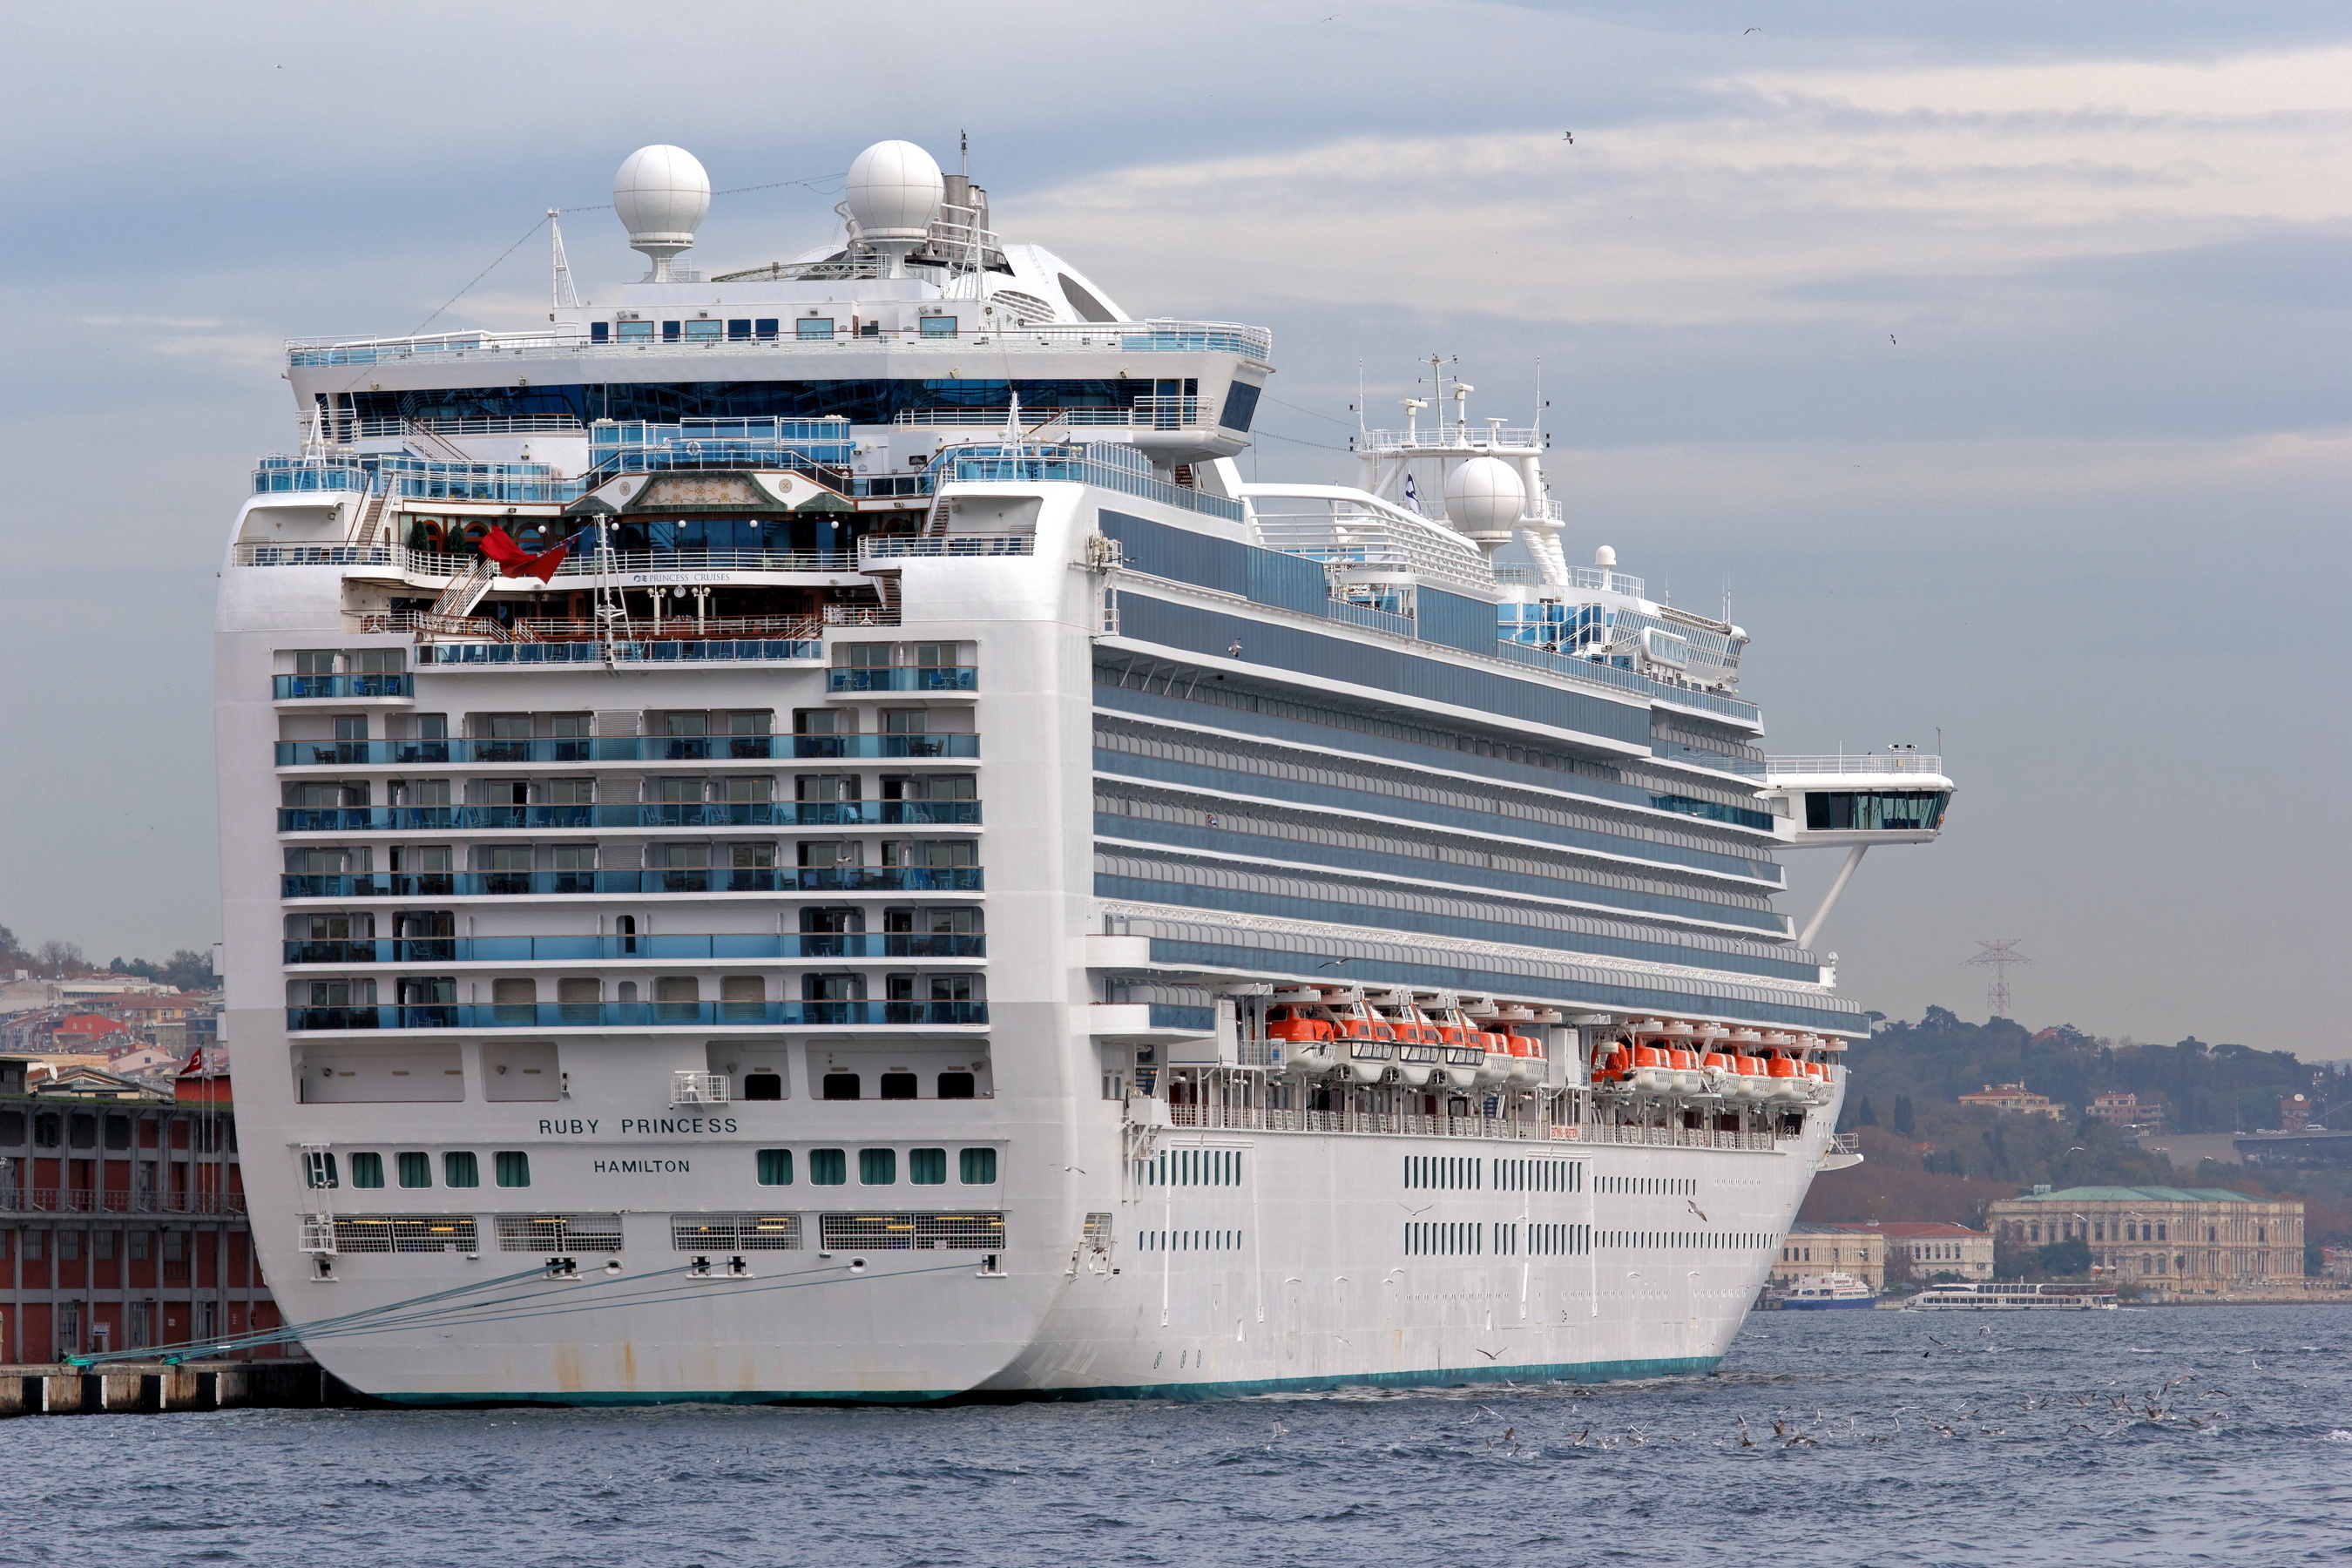 Istanbul Bosphorus Cruise ship Ruby Princess IMG 7538 1800